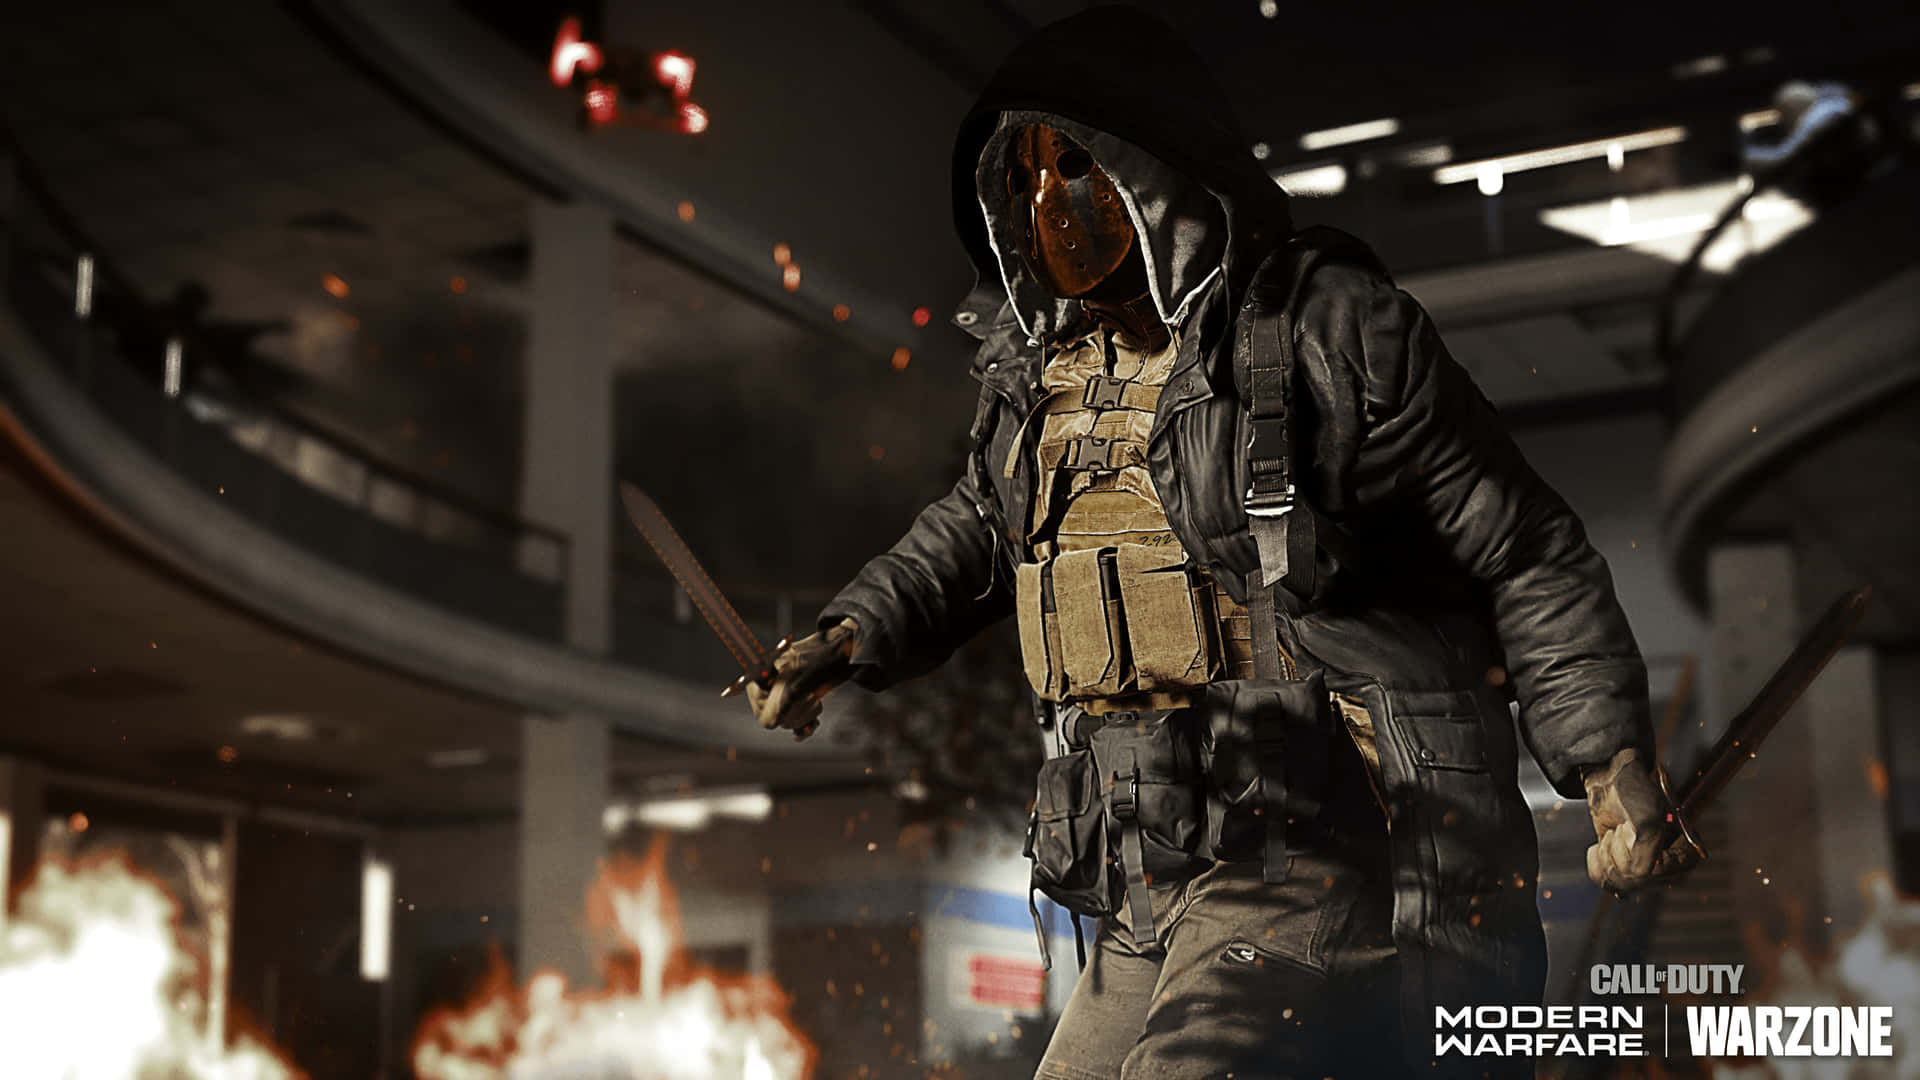 Rivelala Guerra Futuristica Con 'call Of Duty: Modern Warfare' In Alta Definizione.